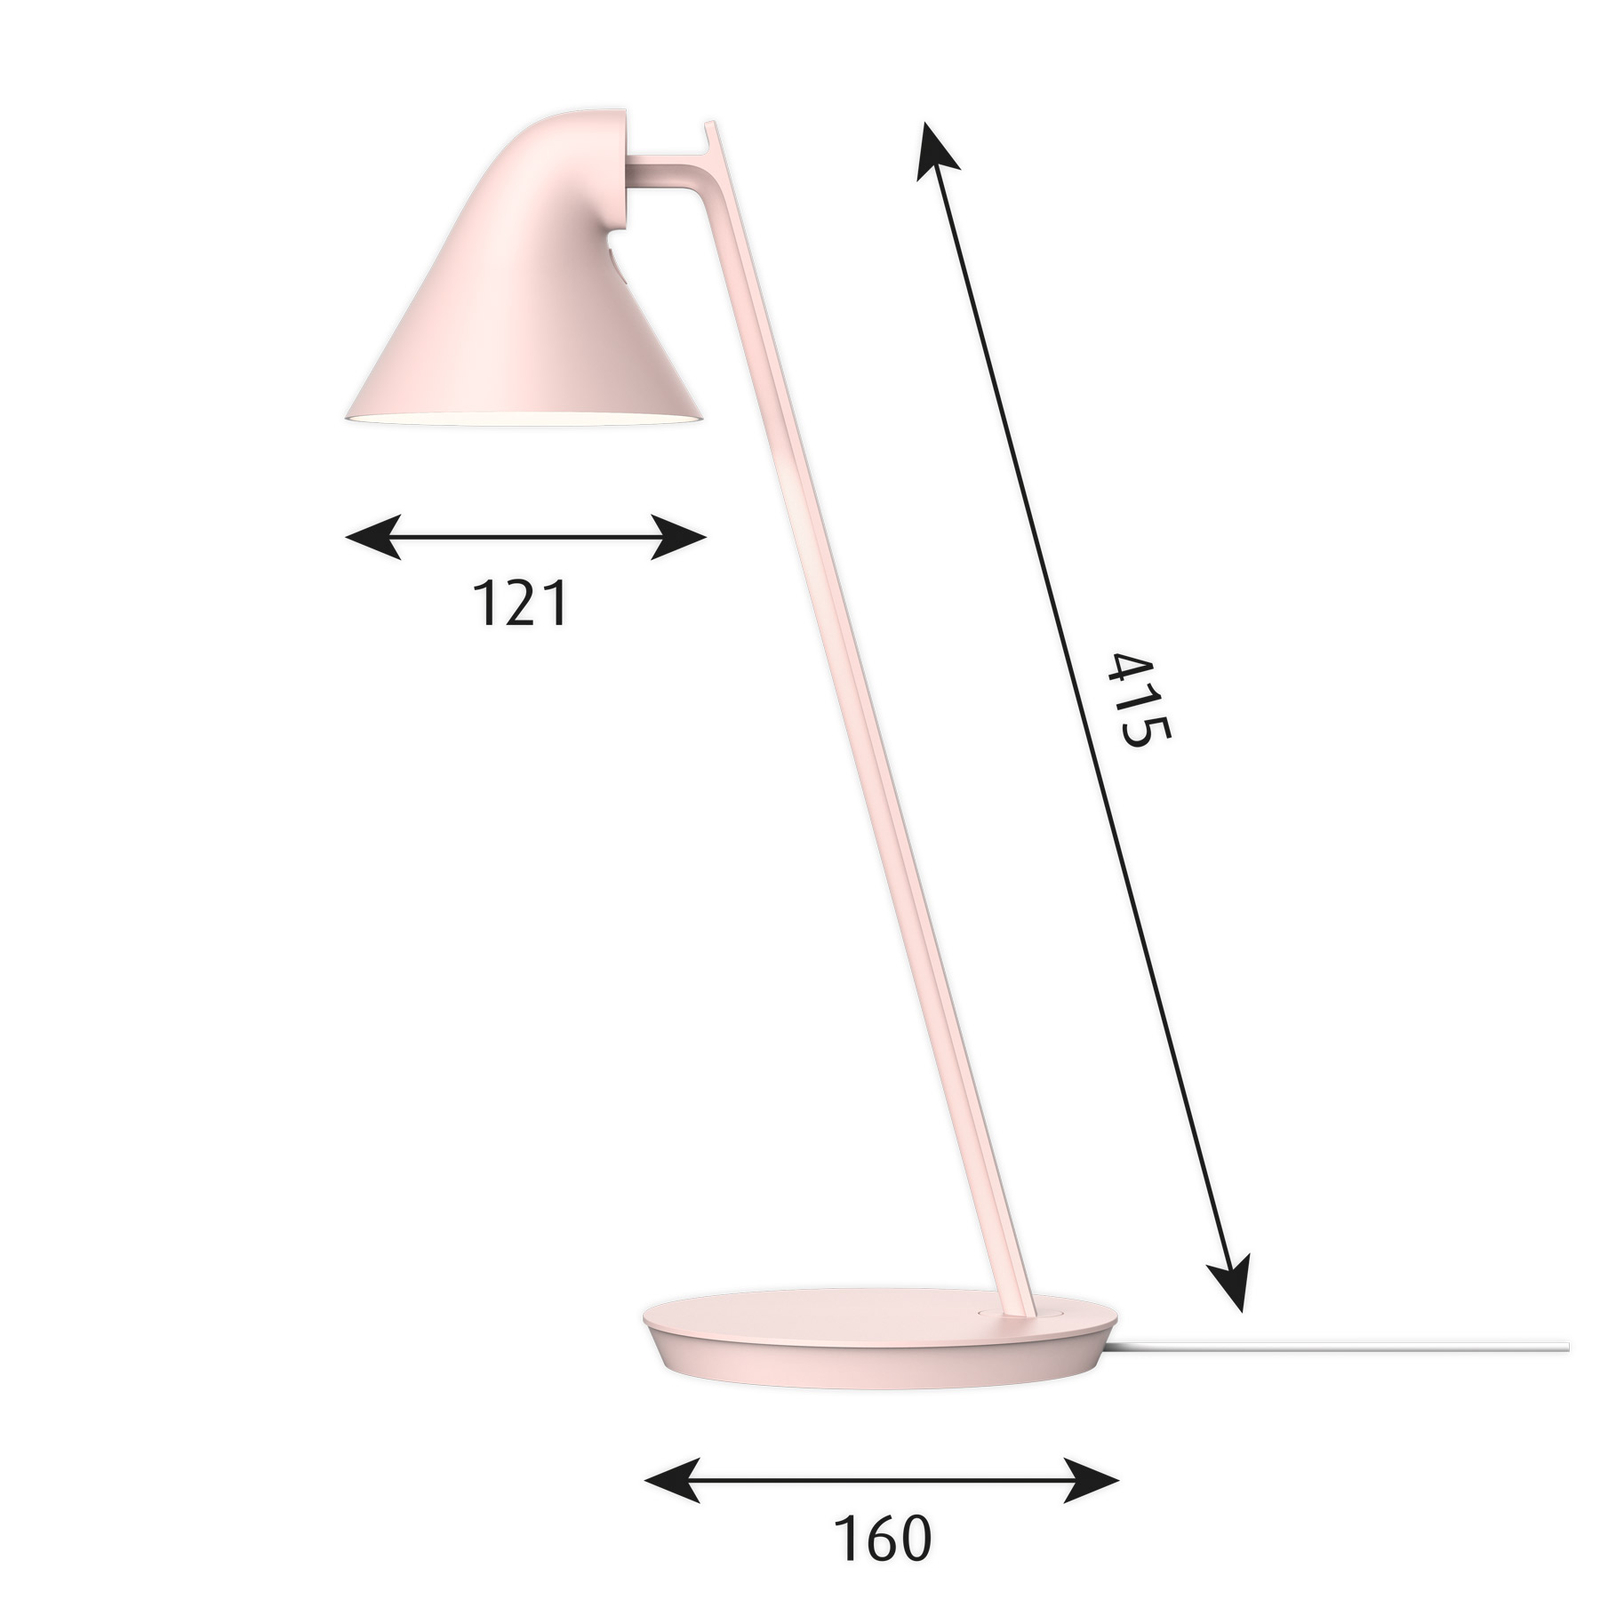 Louis Poulsen NJP Mini lampe LED rose tendre